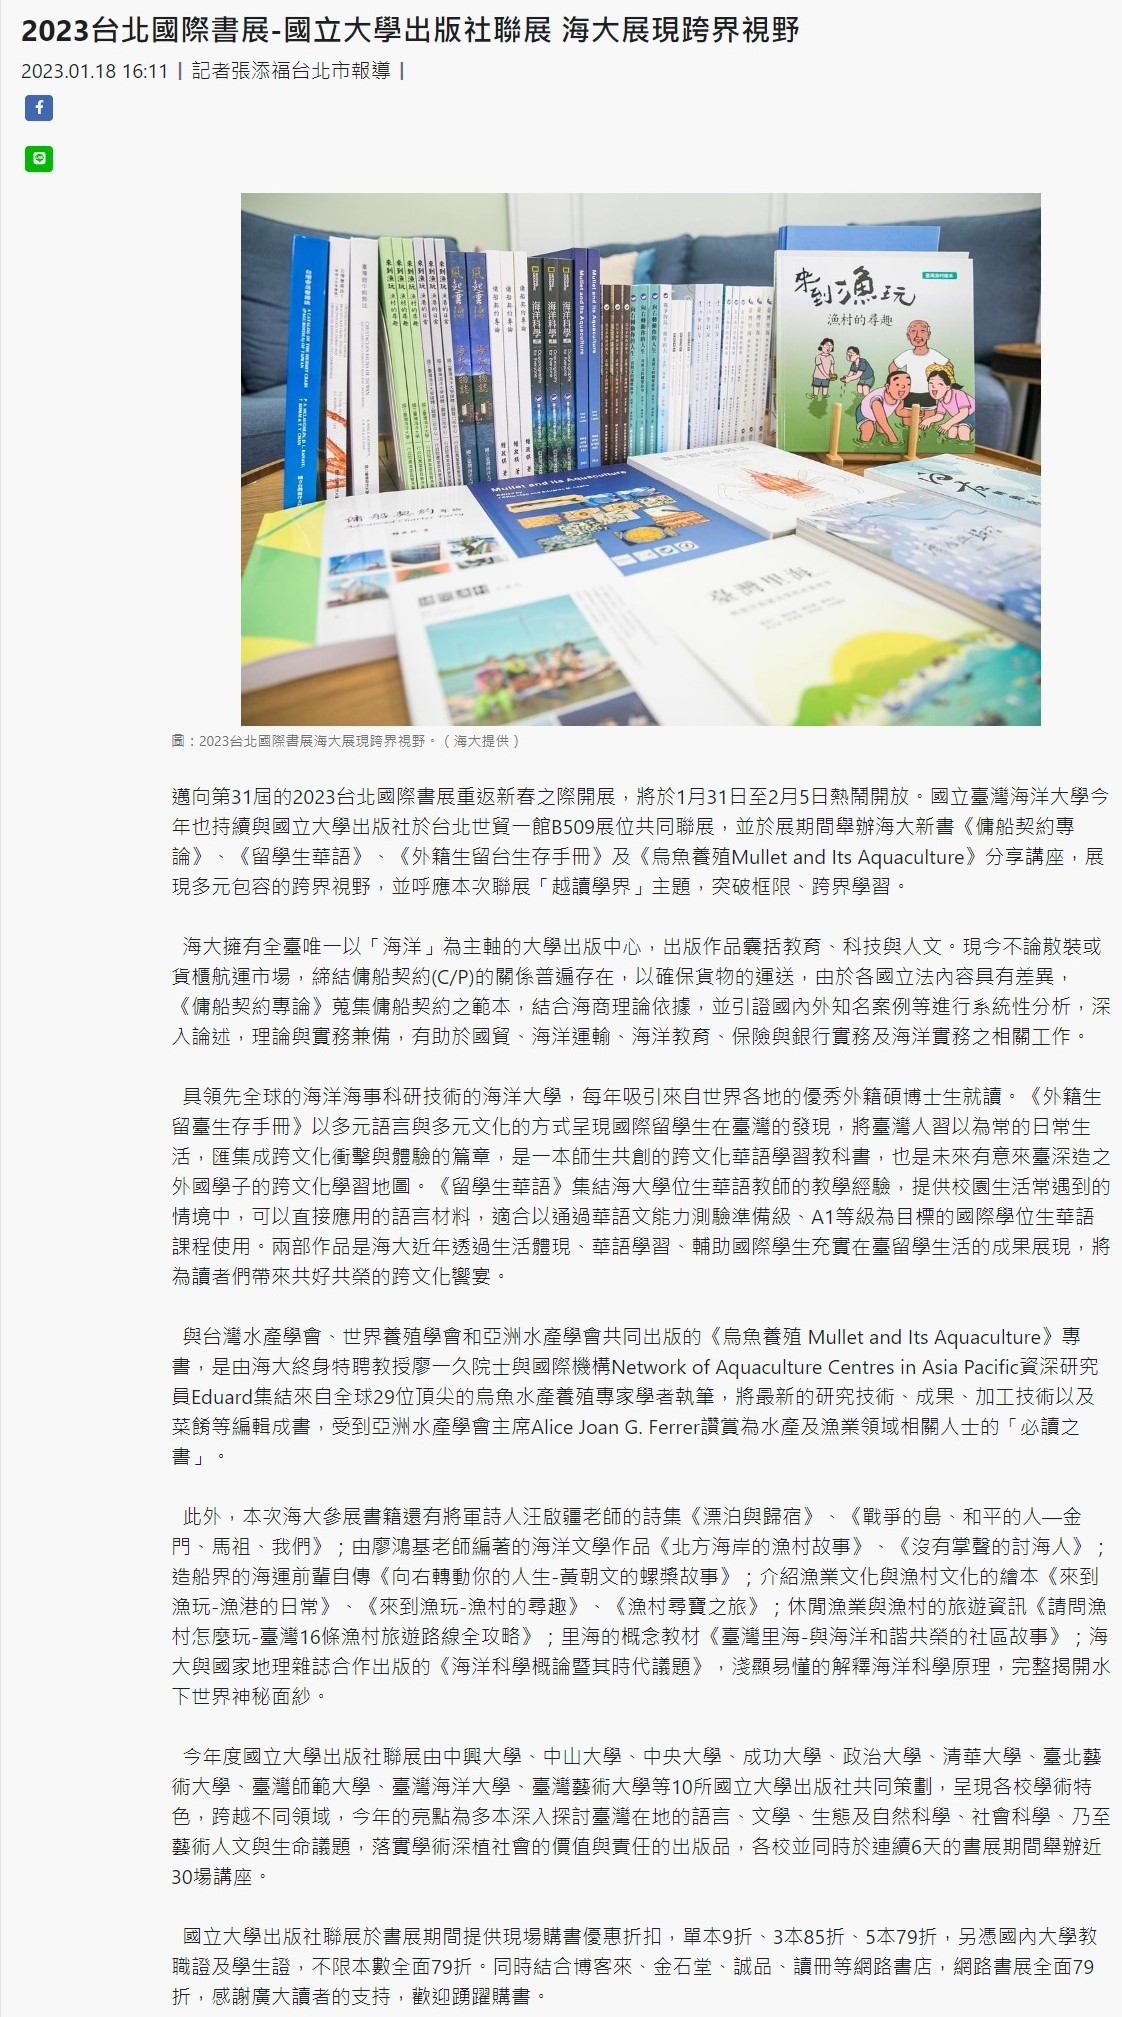 2023台北國際書展 國立大學出版社聯展 海大展跨界視野